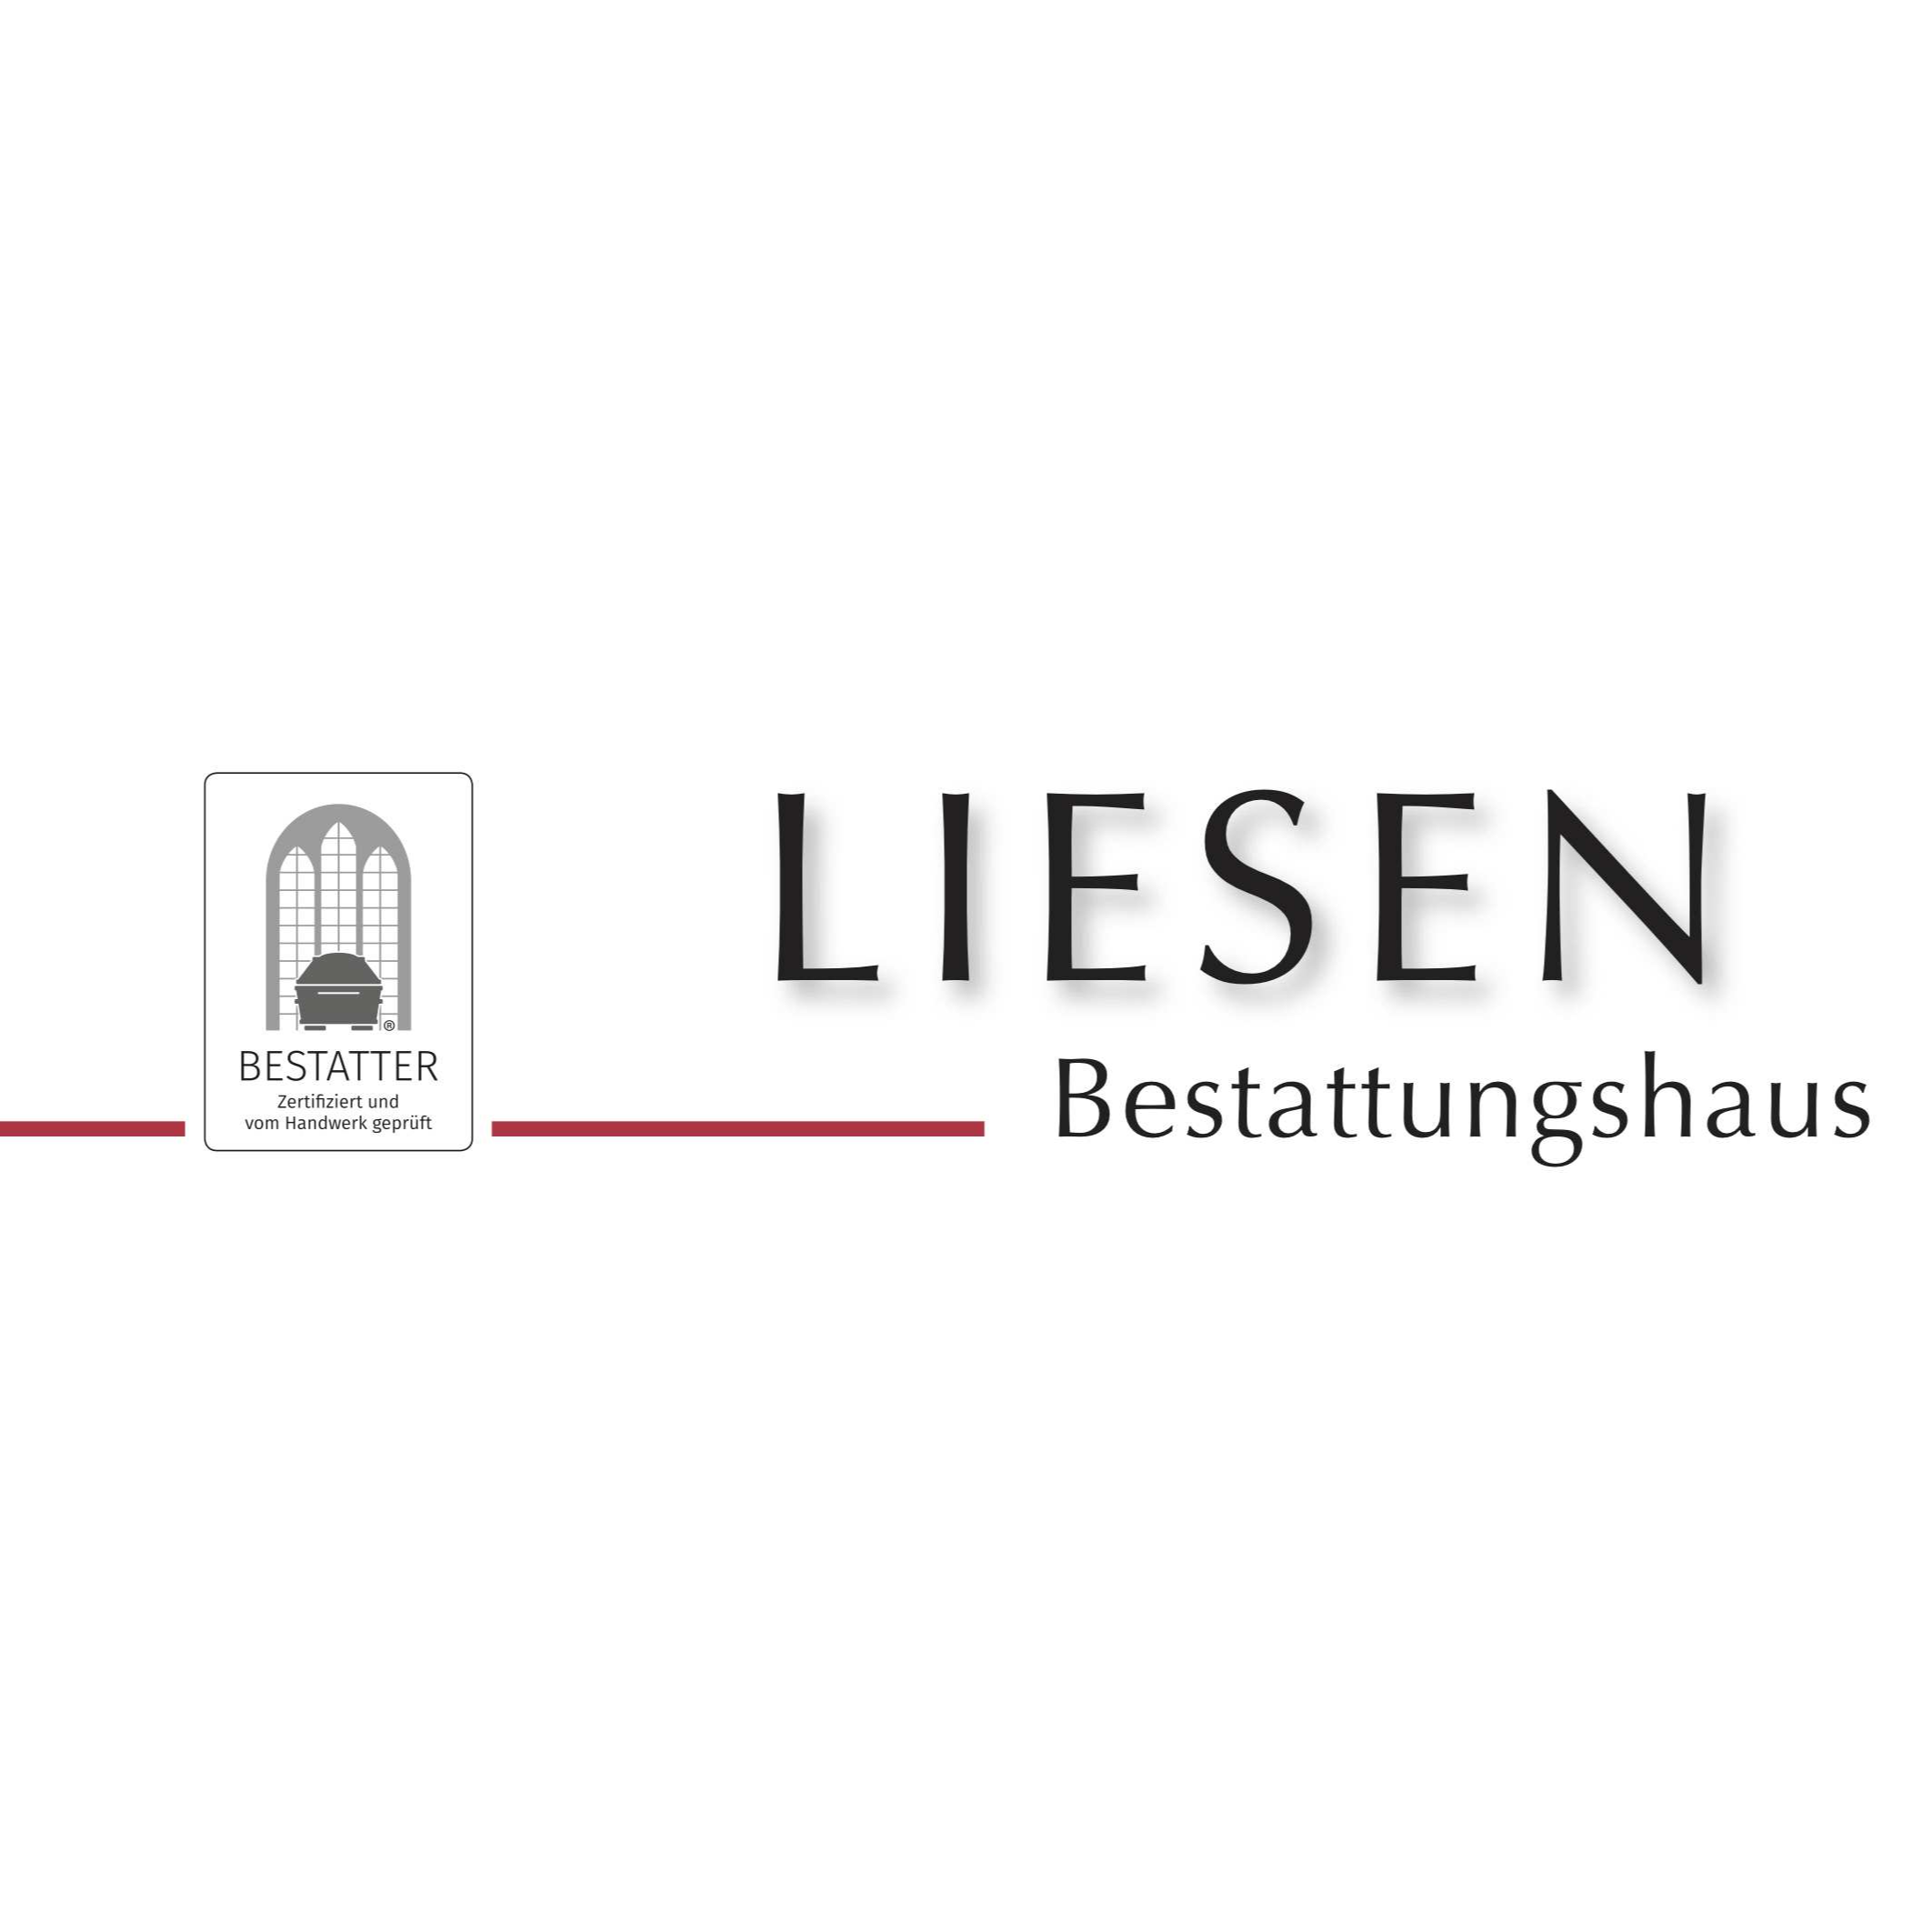 Liesen GmbH Bestattungshaus - Schreinerei  